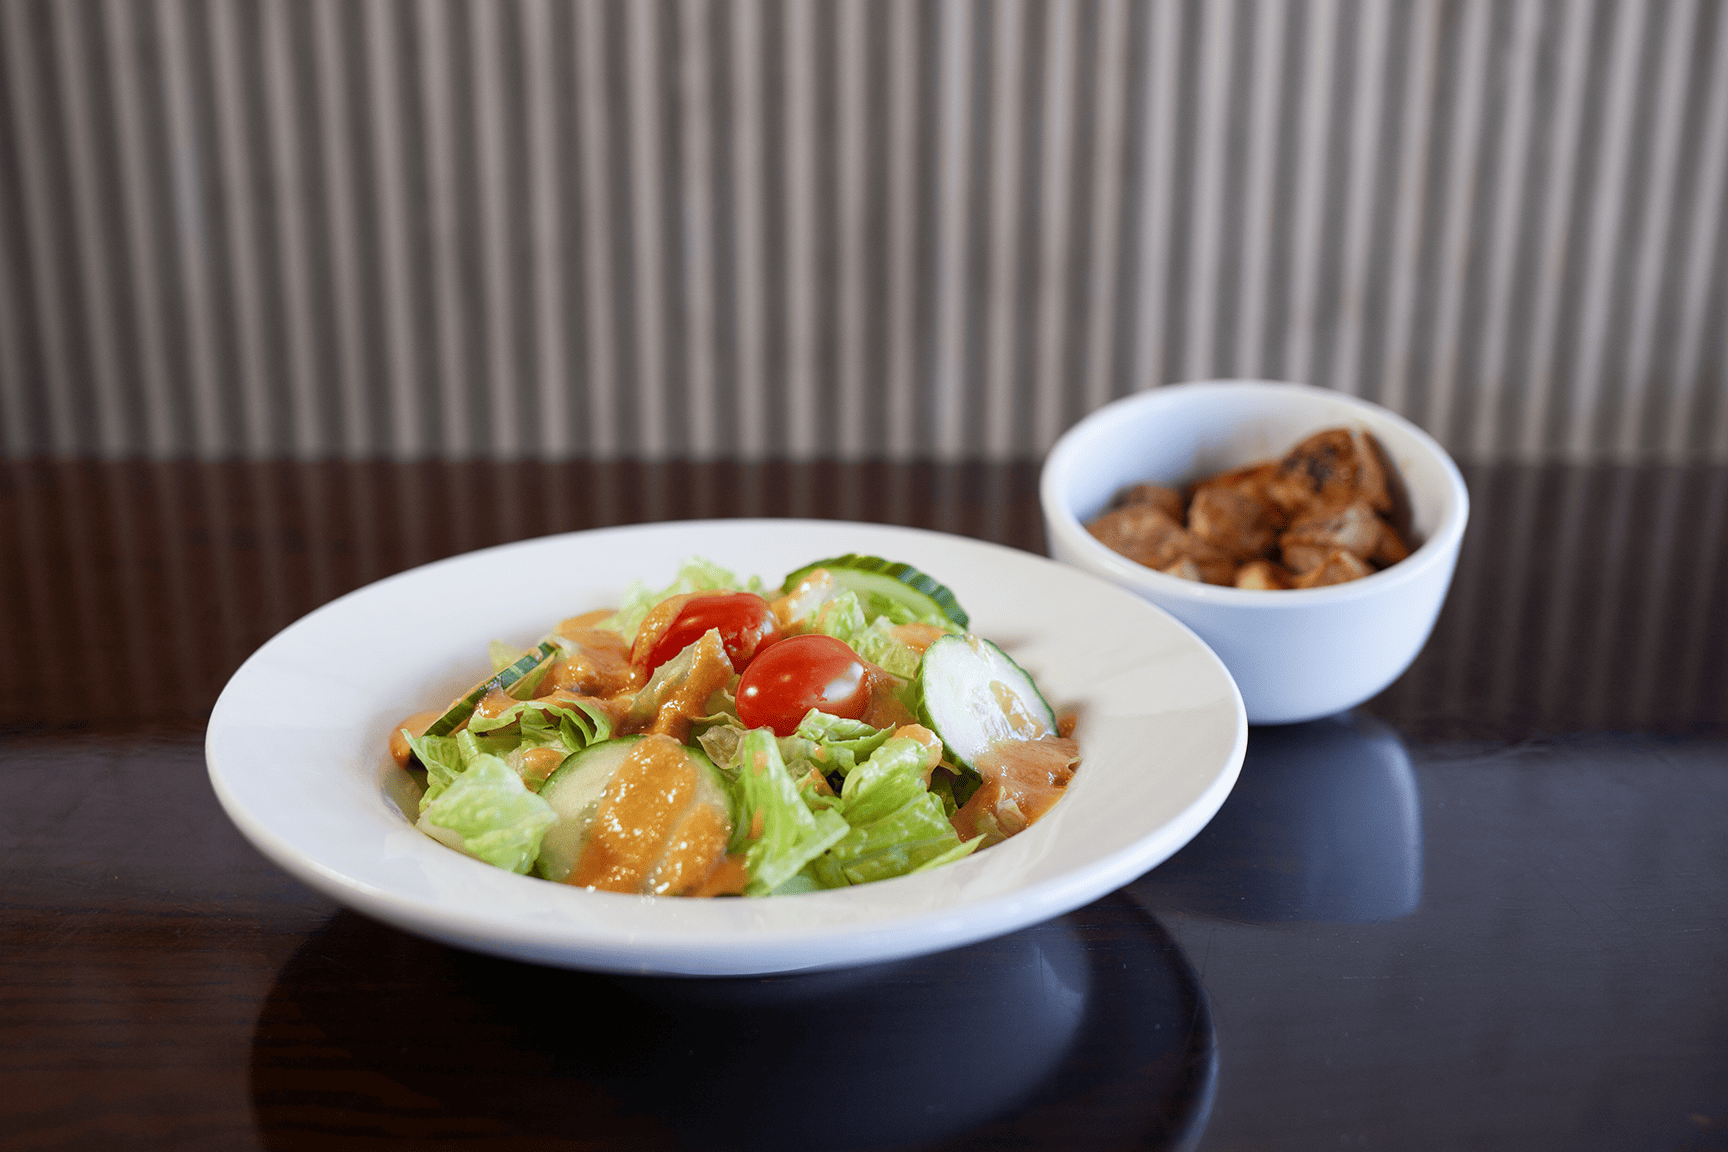 Hibachi chicken salad